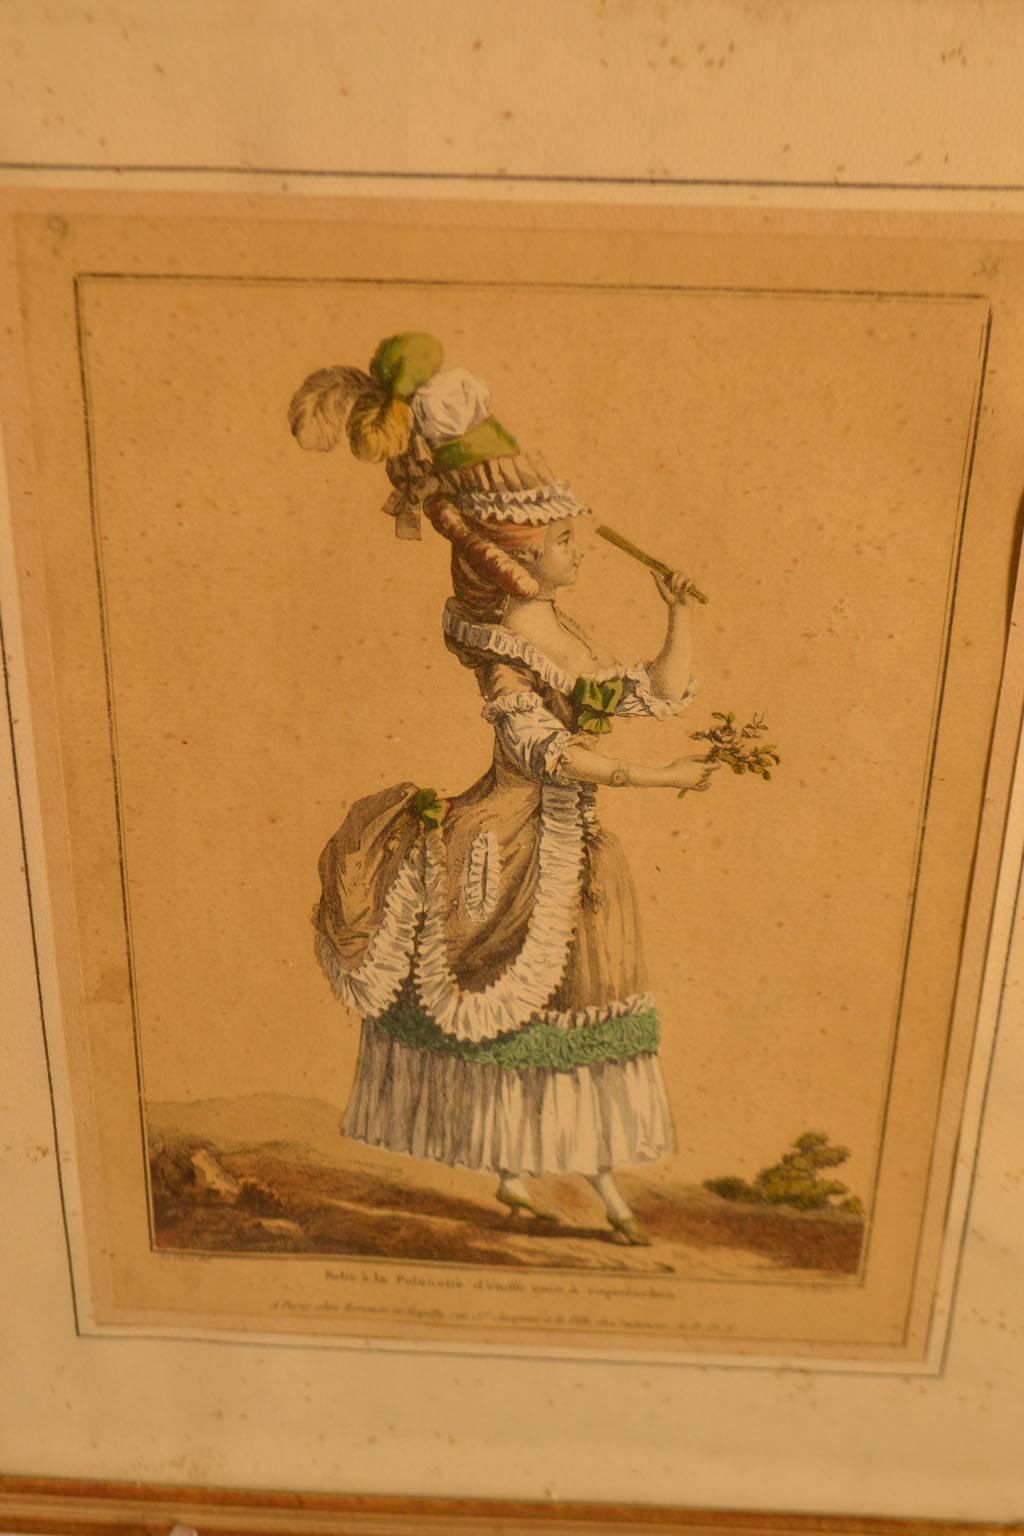 gerahmter Modestich aus dem 18. Jahrhundert, der eine Frau zeigt, die zur Unterhaltung oder zur Bewirtung gekleidet ist, mit einem Federhut, einer schicken Bustle mit grüner Borte und einem Blumenstrauß in der Hand.